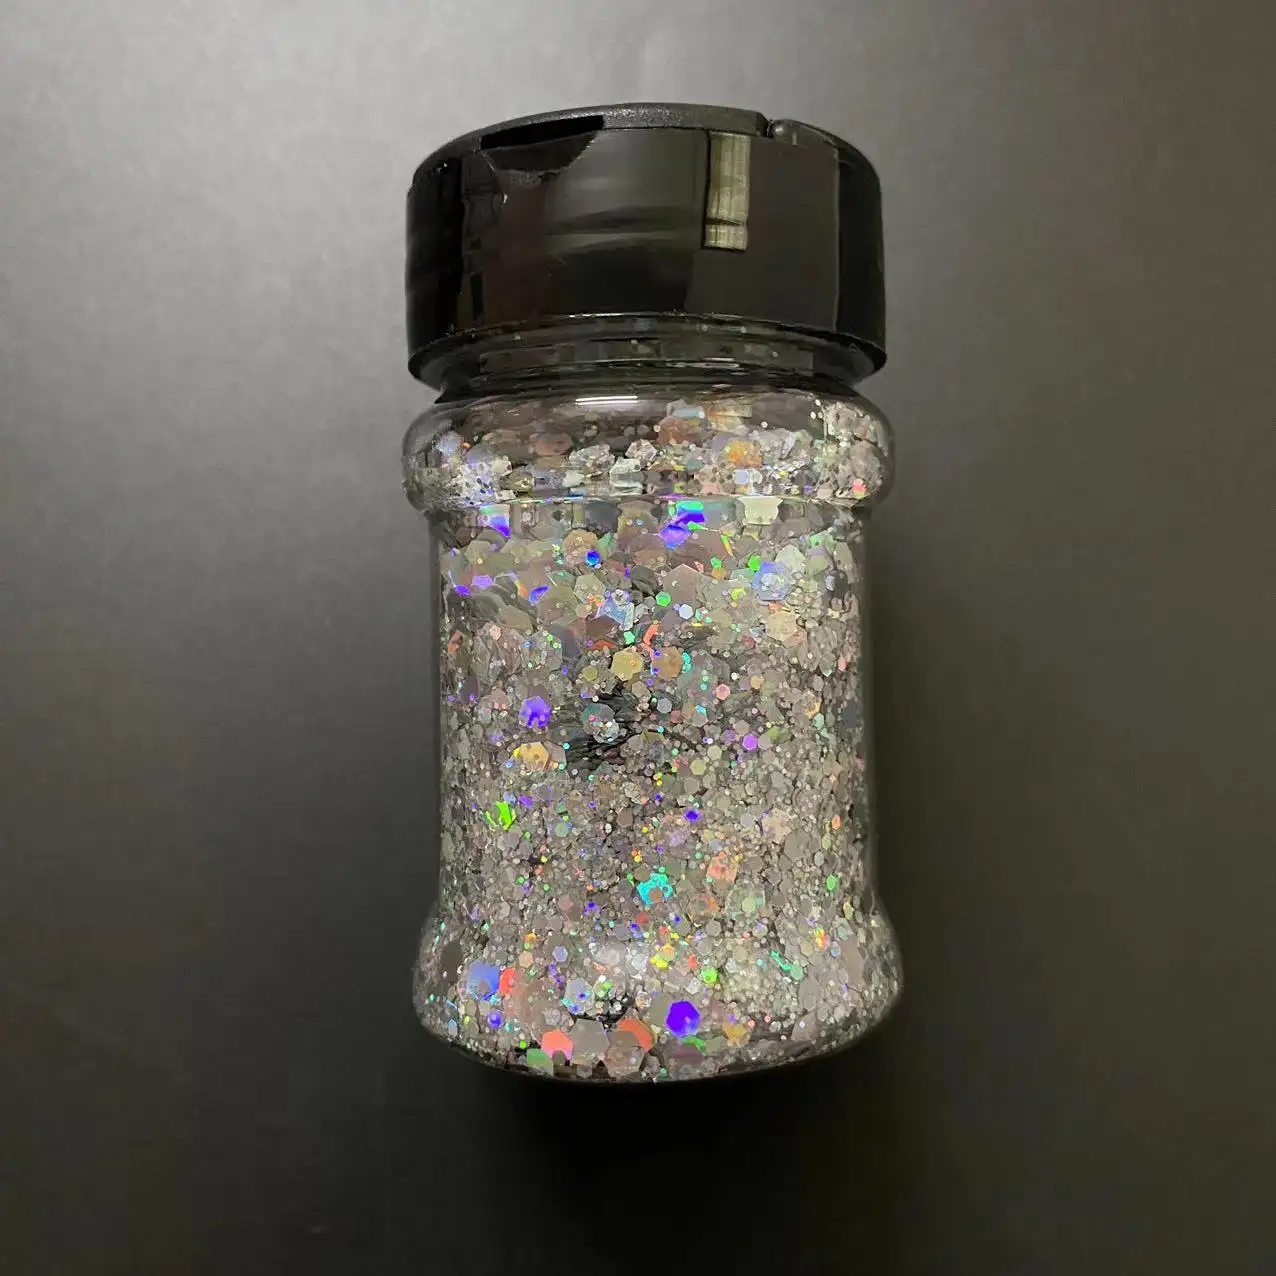 Phone Case Loose Glitter Powder Pigment Roller Shaker Bottle 1 Oz Glitter Shaker